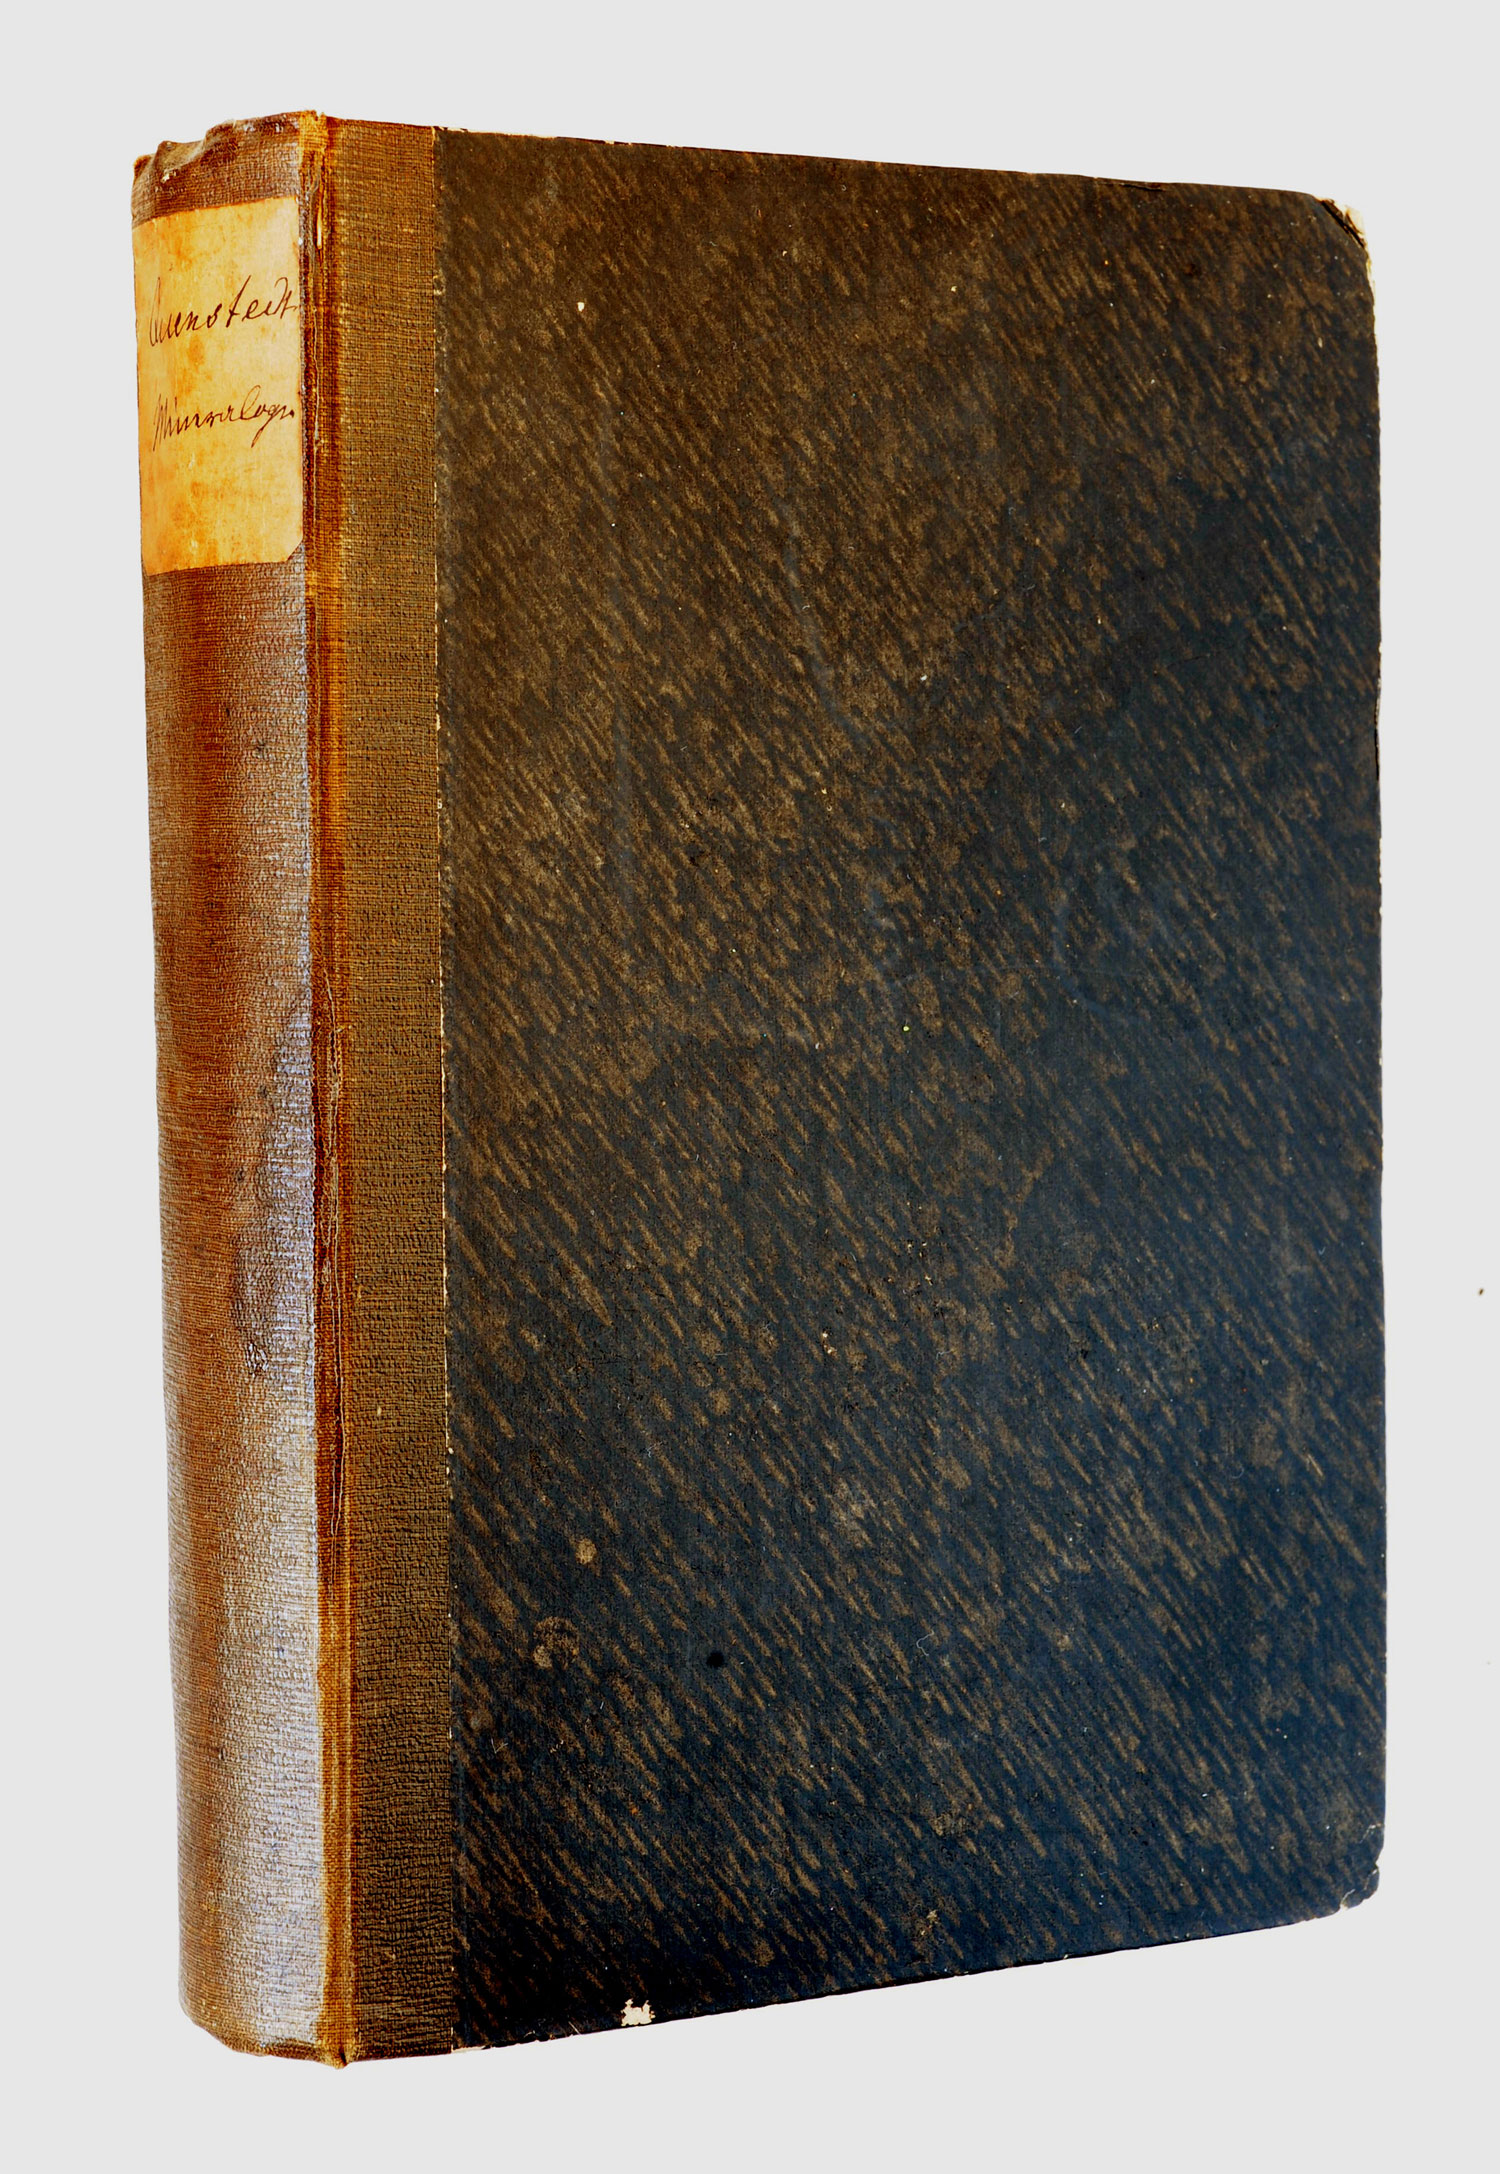 Quenstedt, 1863, binding